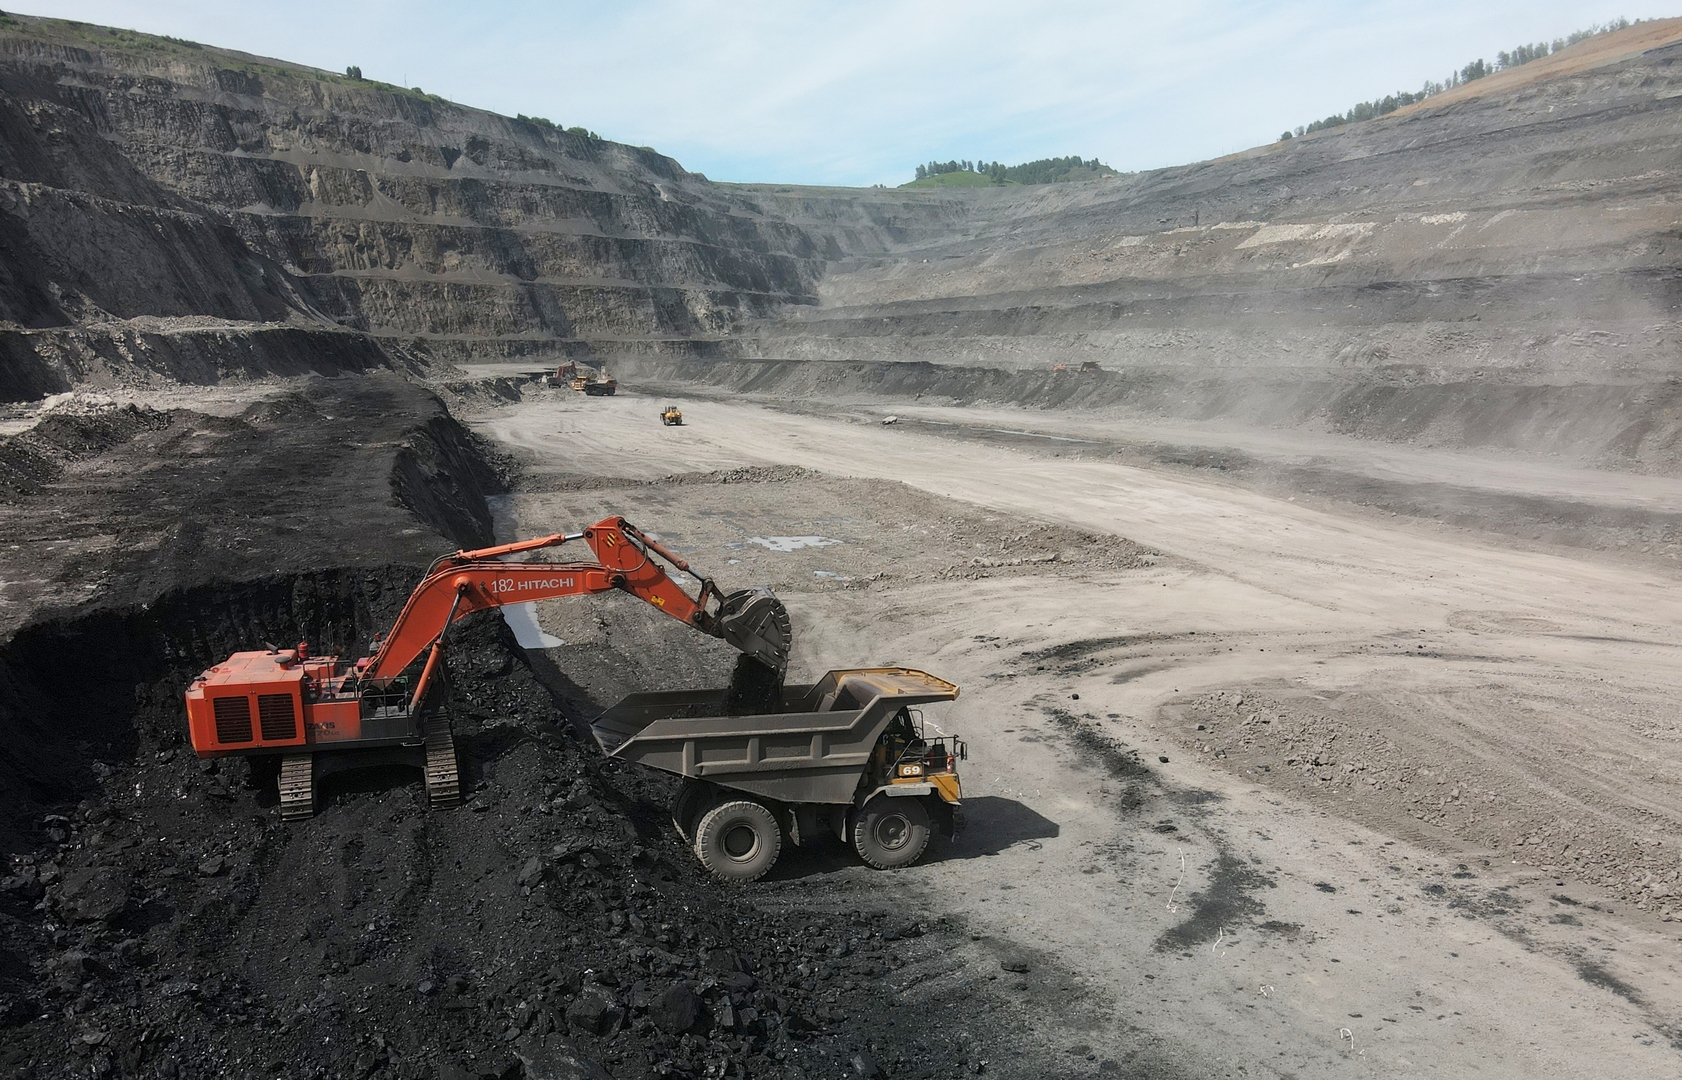 نوفاك: روسيا يمكنها إعادة توجيه حوالي 25 مليون طن من الفحم من أوروبا إلى الشرق